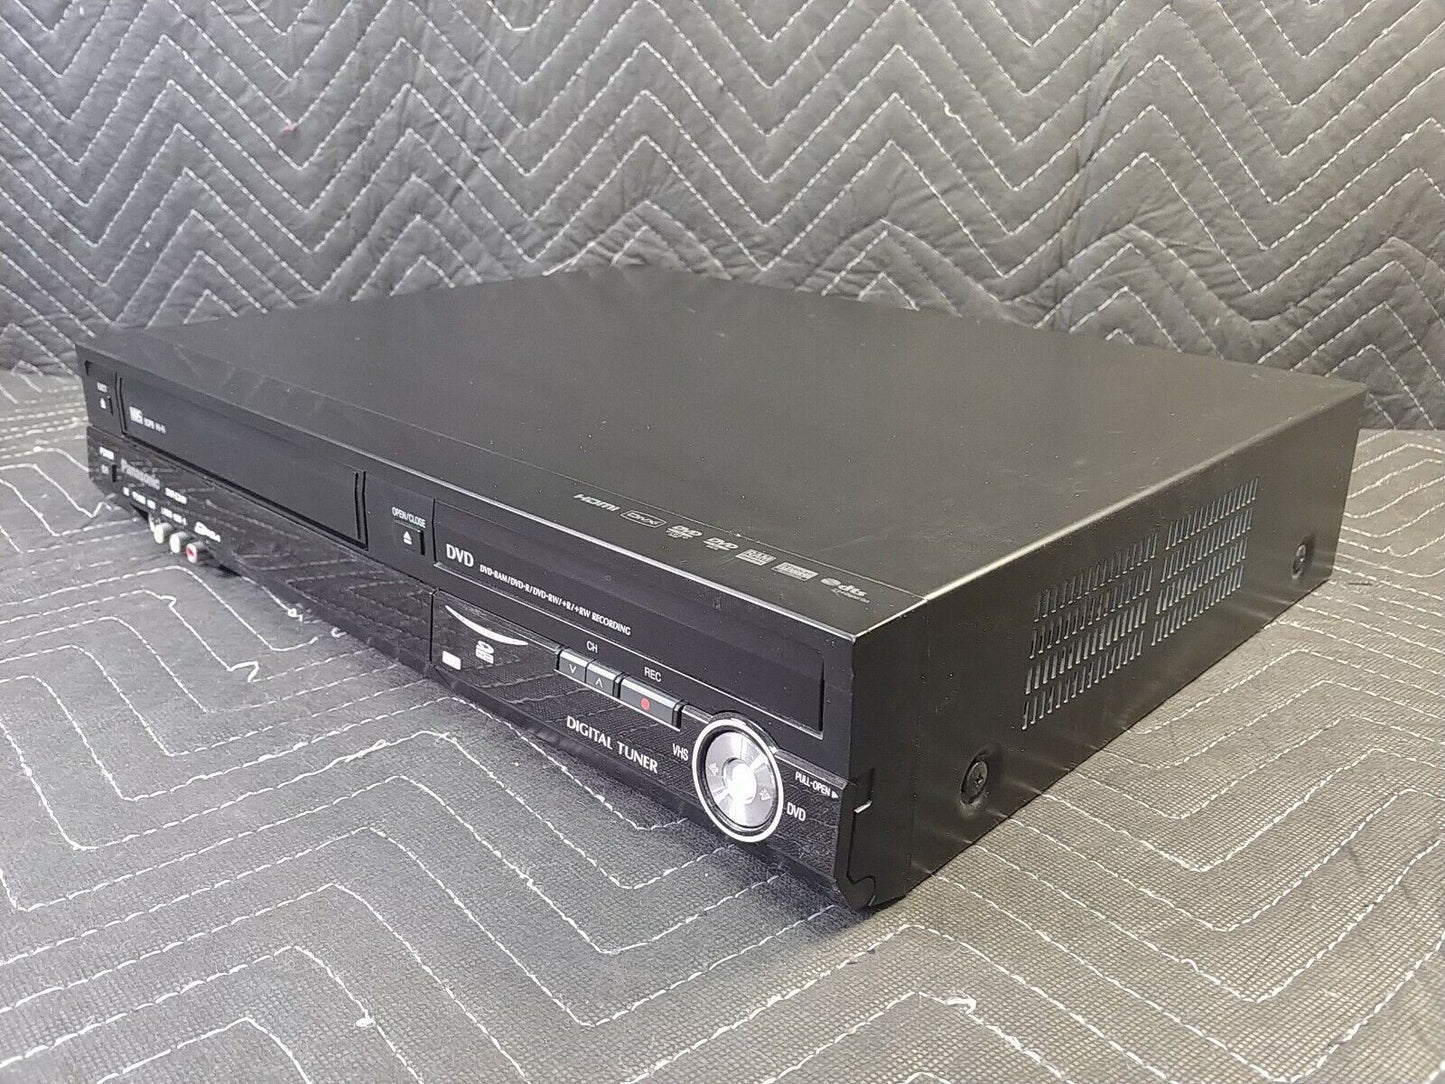 Panasonic DMR-EZ48V DVD/VCR Combo Player VHS DVD Recorder HDMI 1080p *SERVICED*